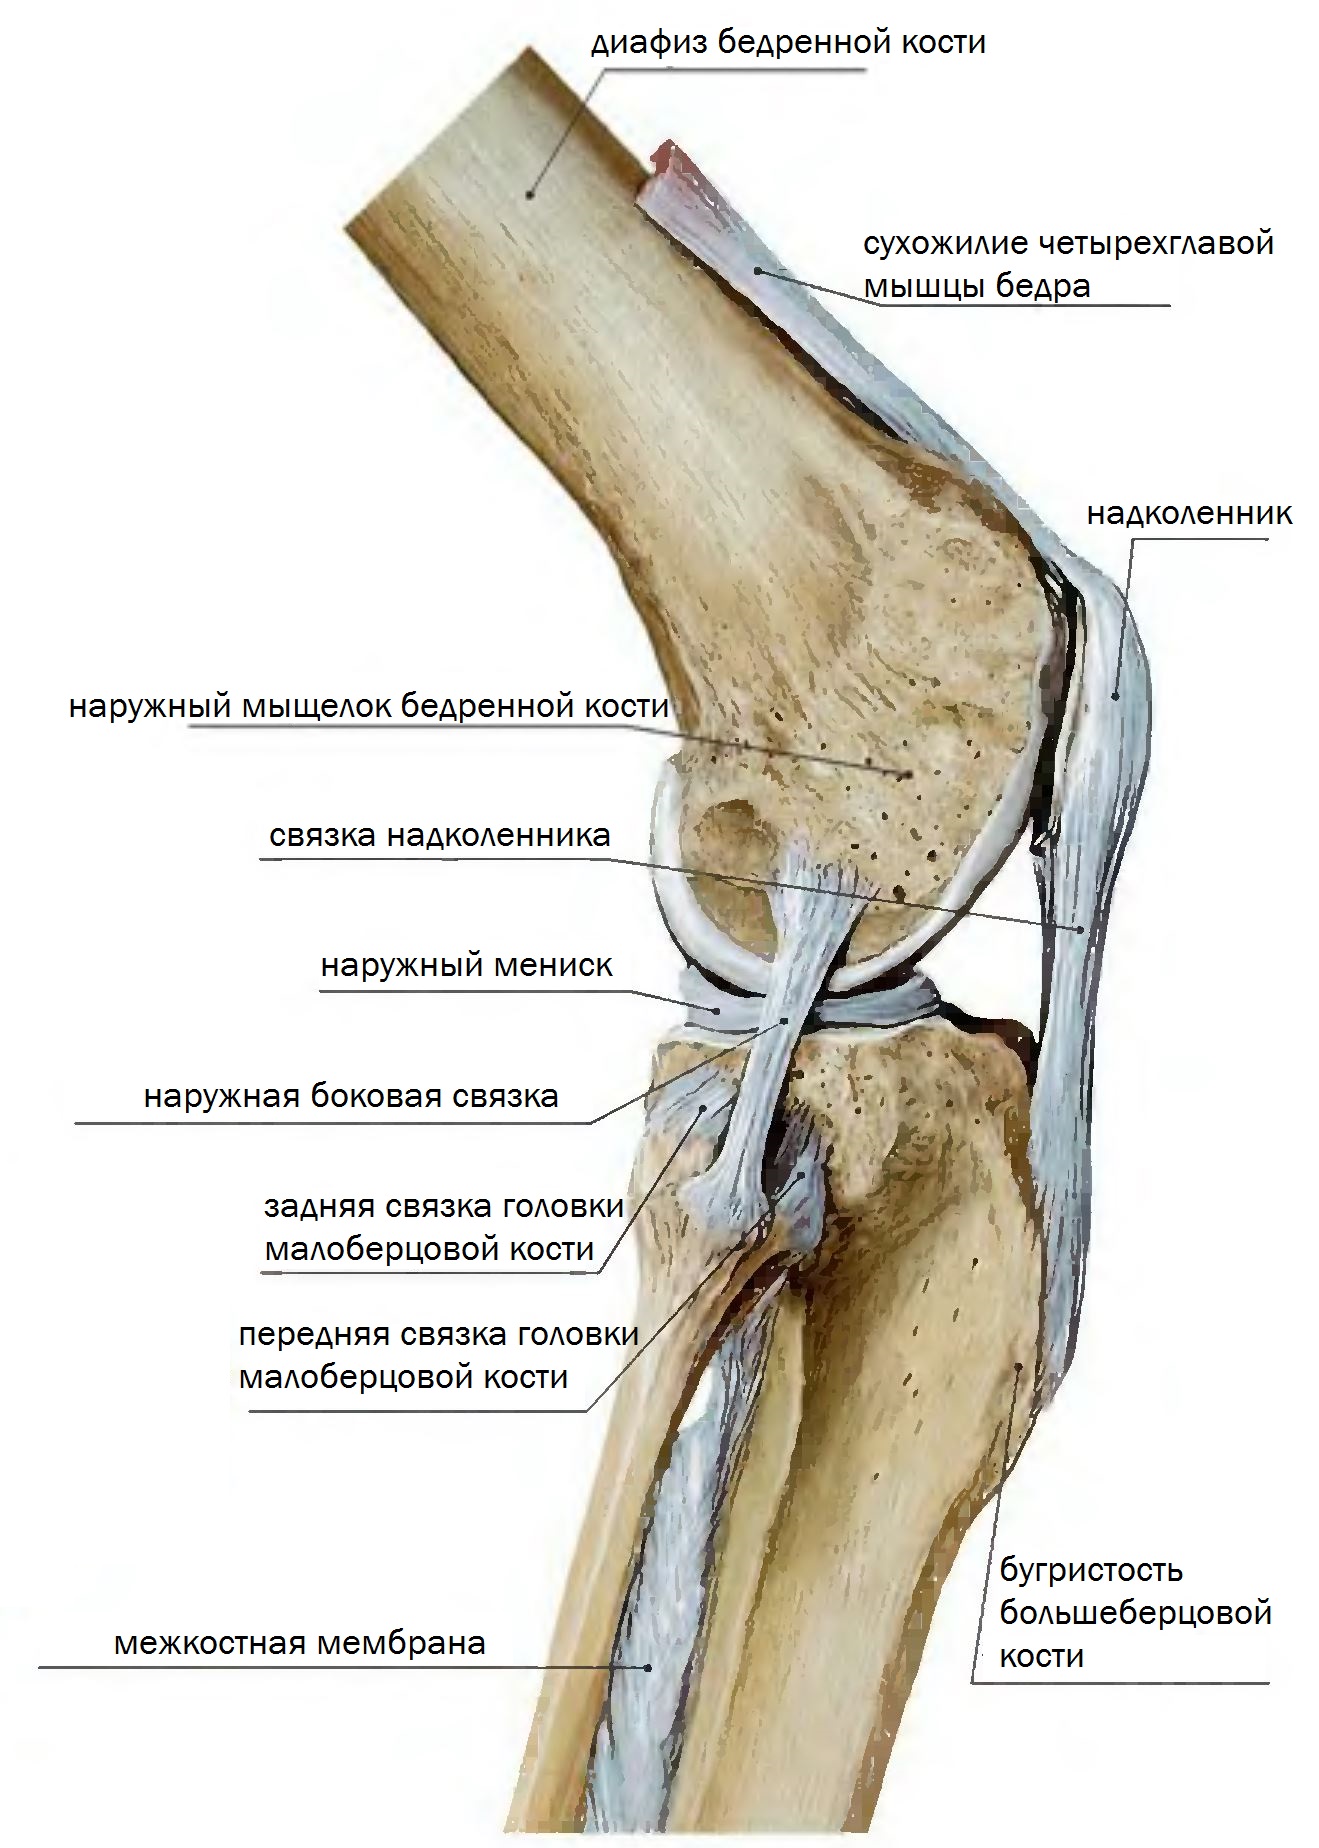 Мыщелки бедра. Мыщелок коленного сустава большеберцовой кости. Коленный сустав анатомия связки надколенника. Коленный сустав малоберцовая кость. Передняя связка головки малоберцовой кости.